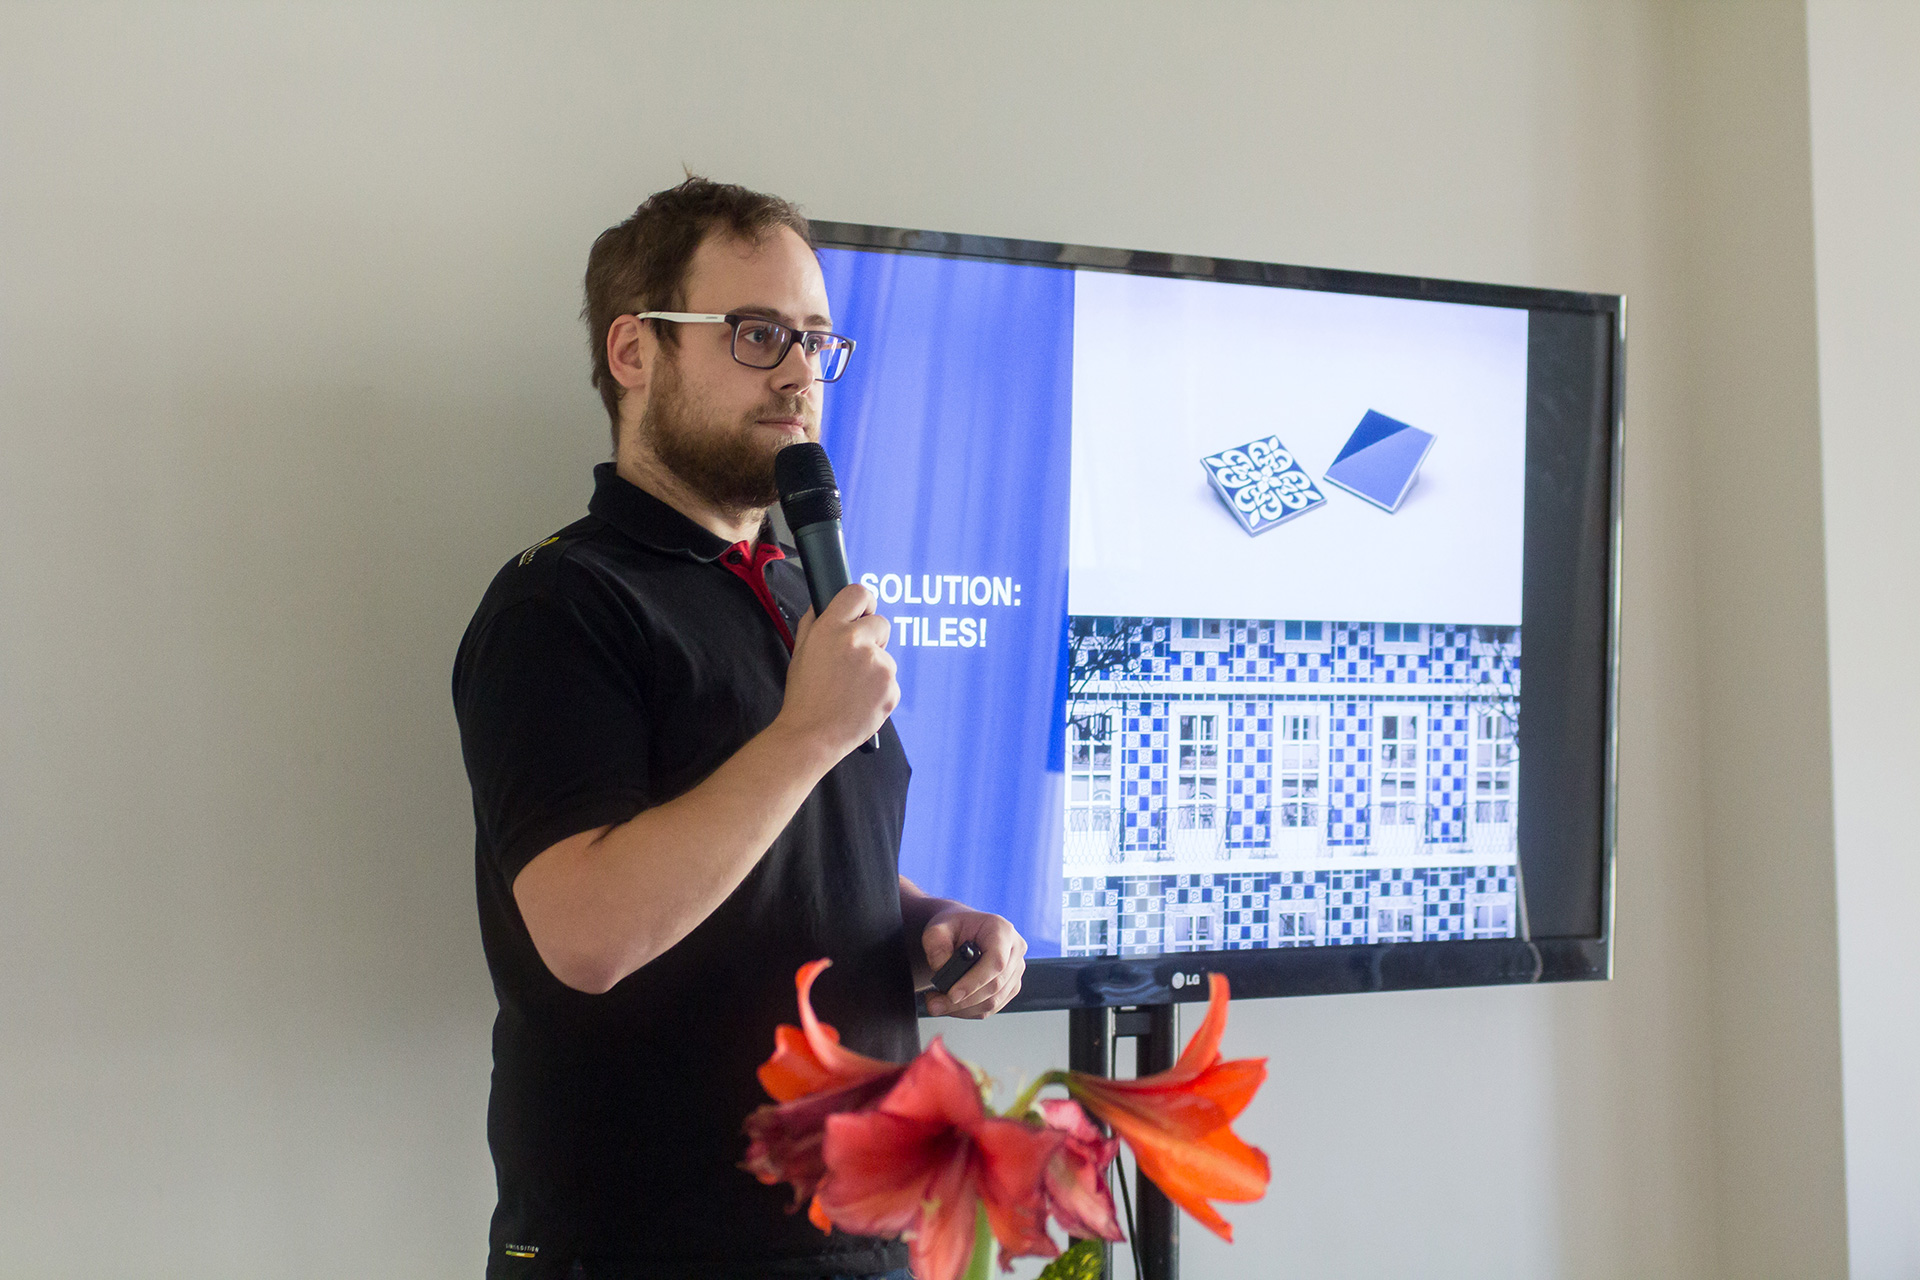 Matej Michlik presenting Tiles